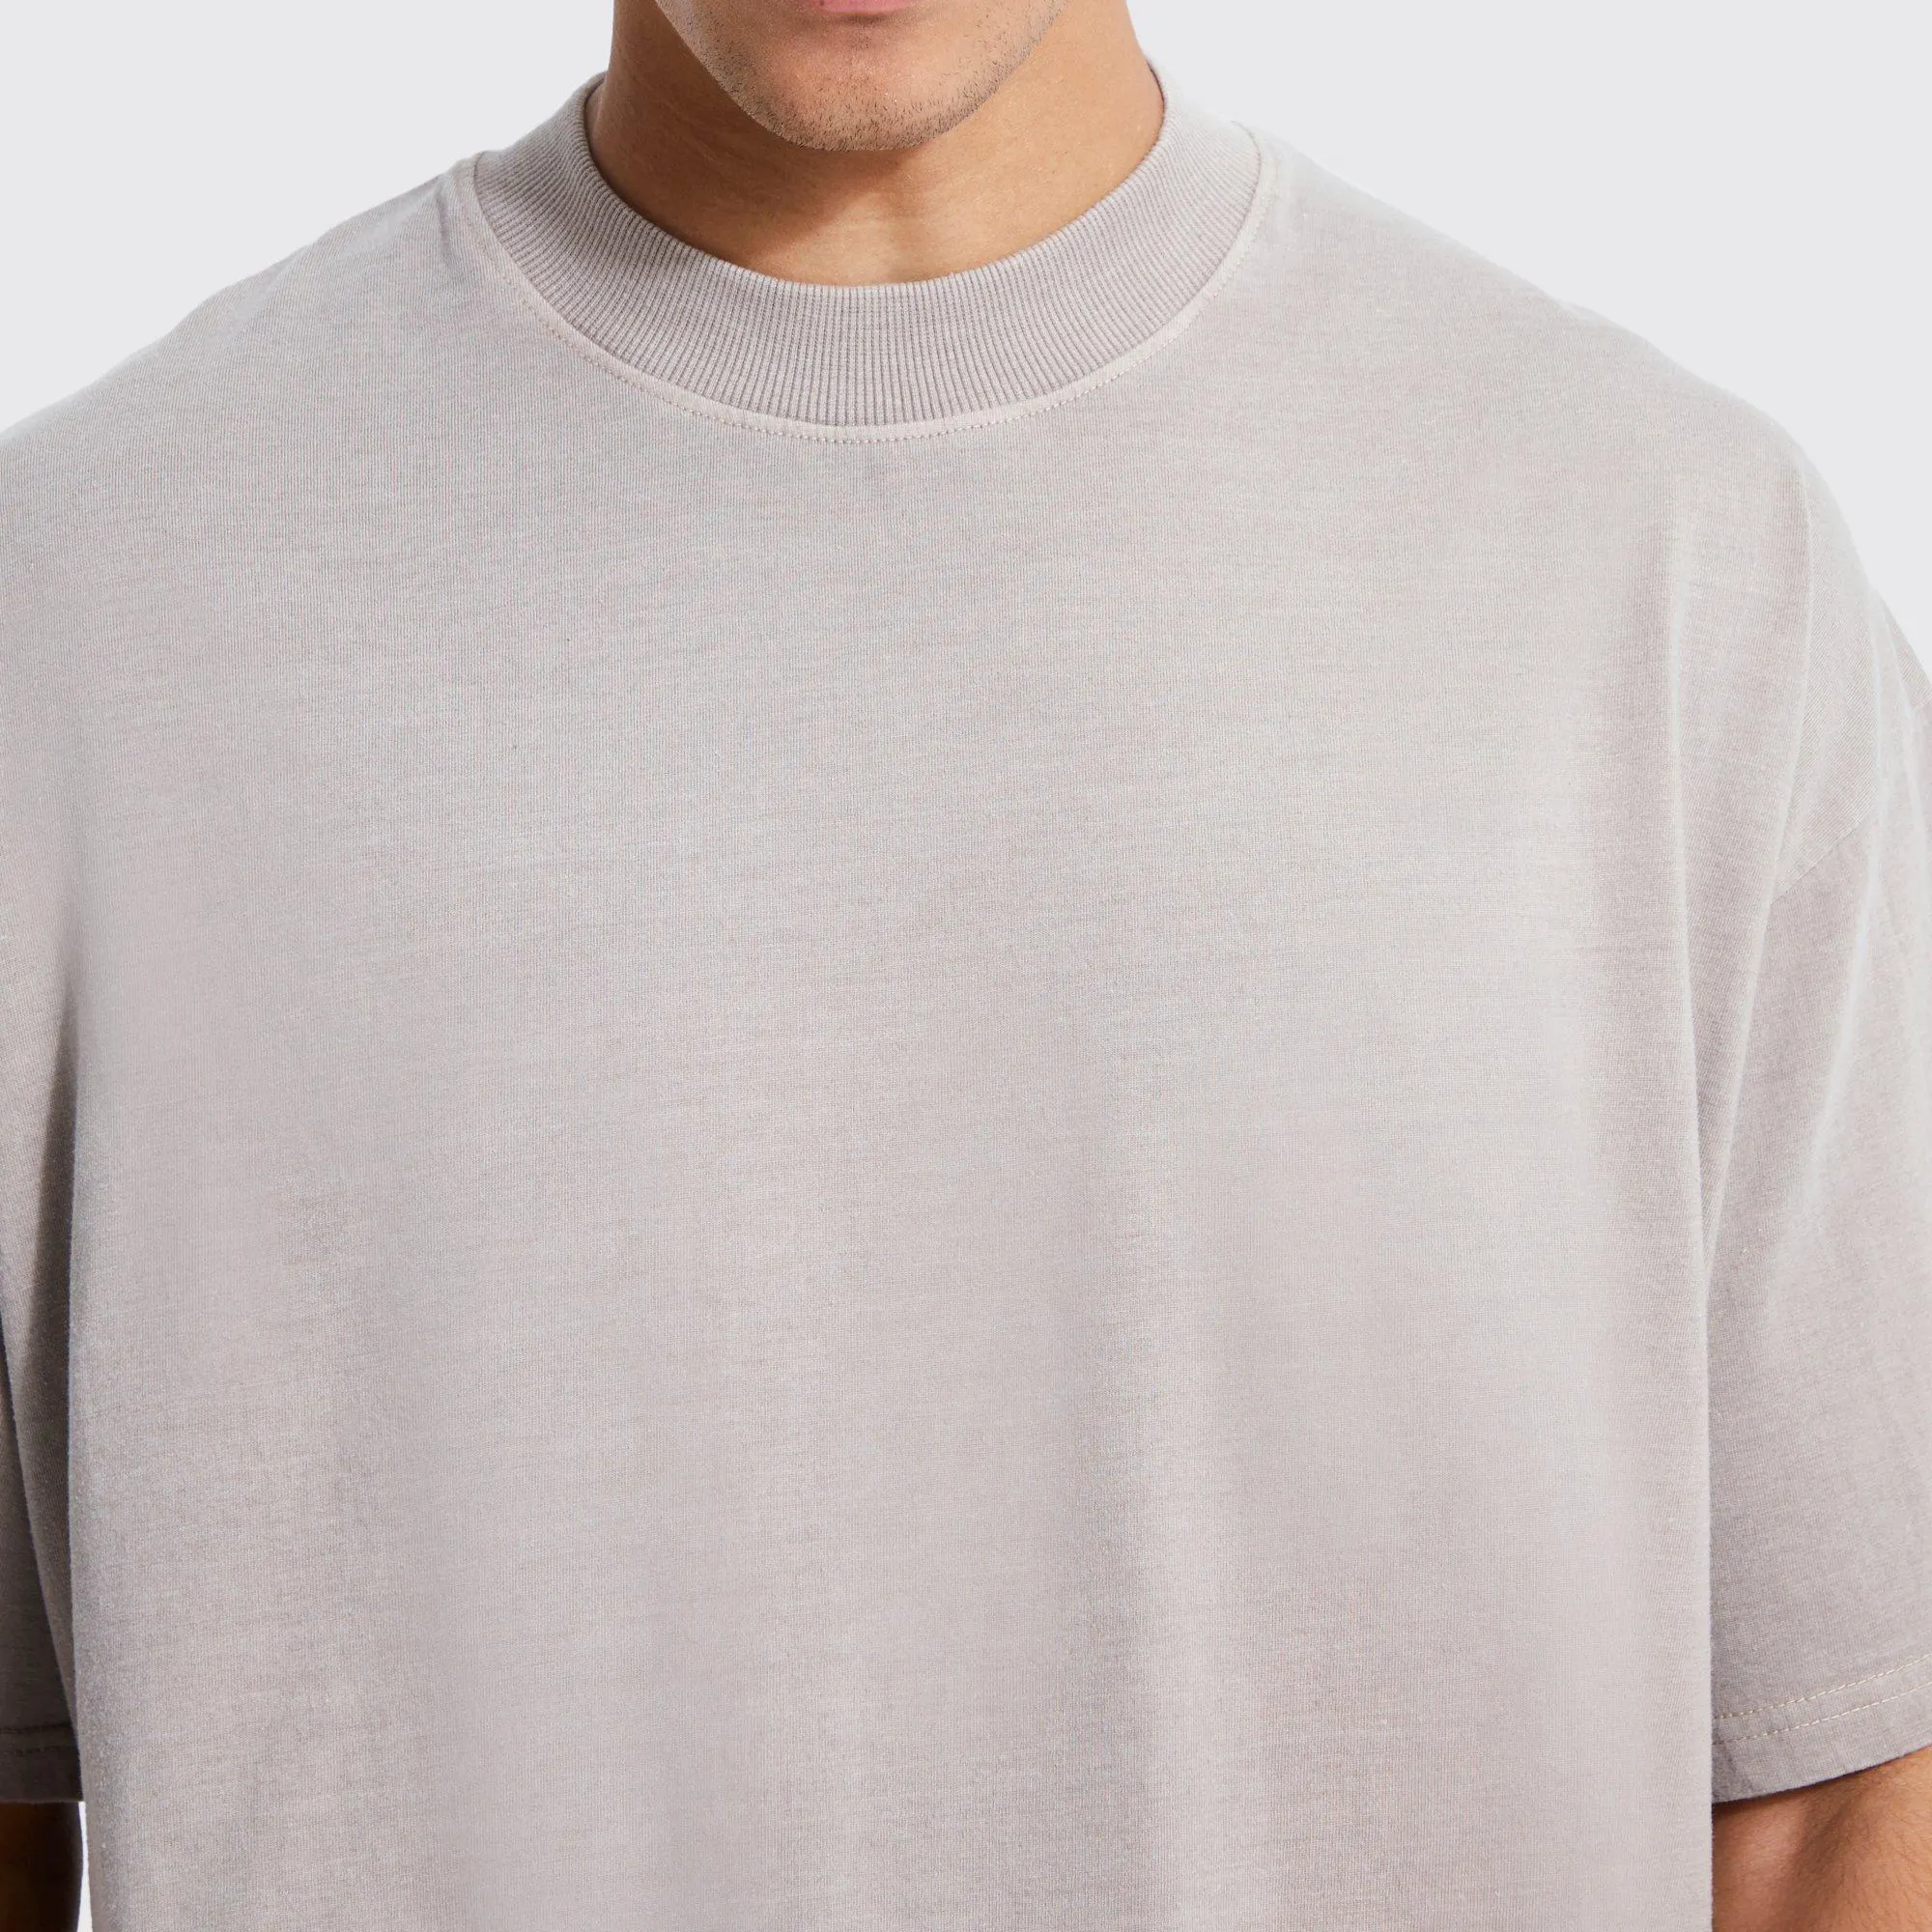 Maglietta da uomo: crea il tuo Look con T-Shirt in ciniglia, stampa e sasso con asciugatura rapida